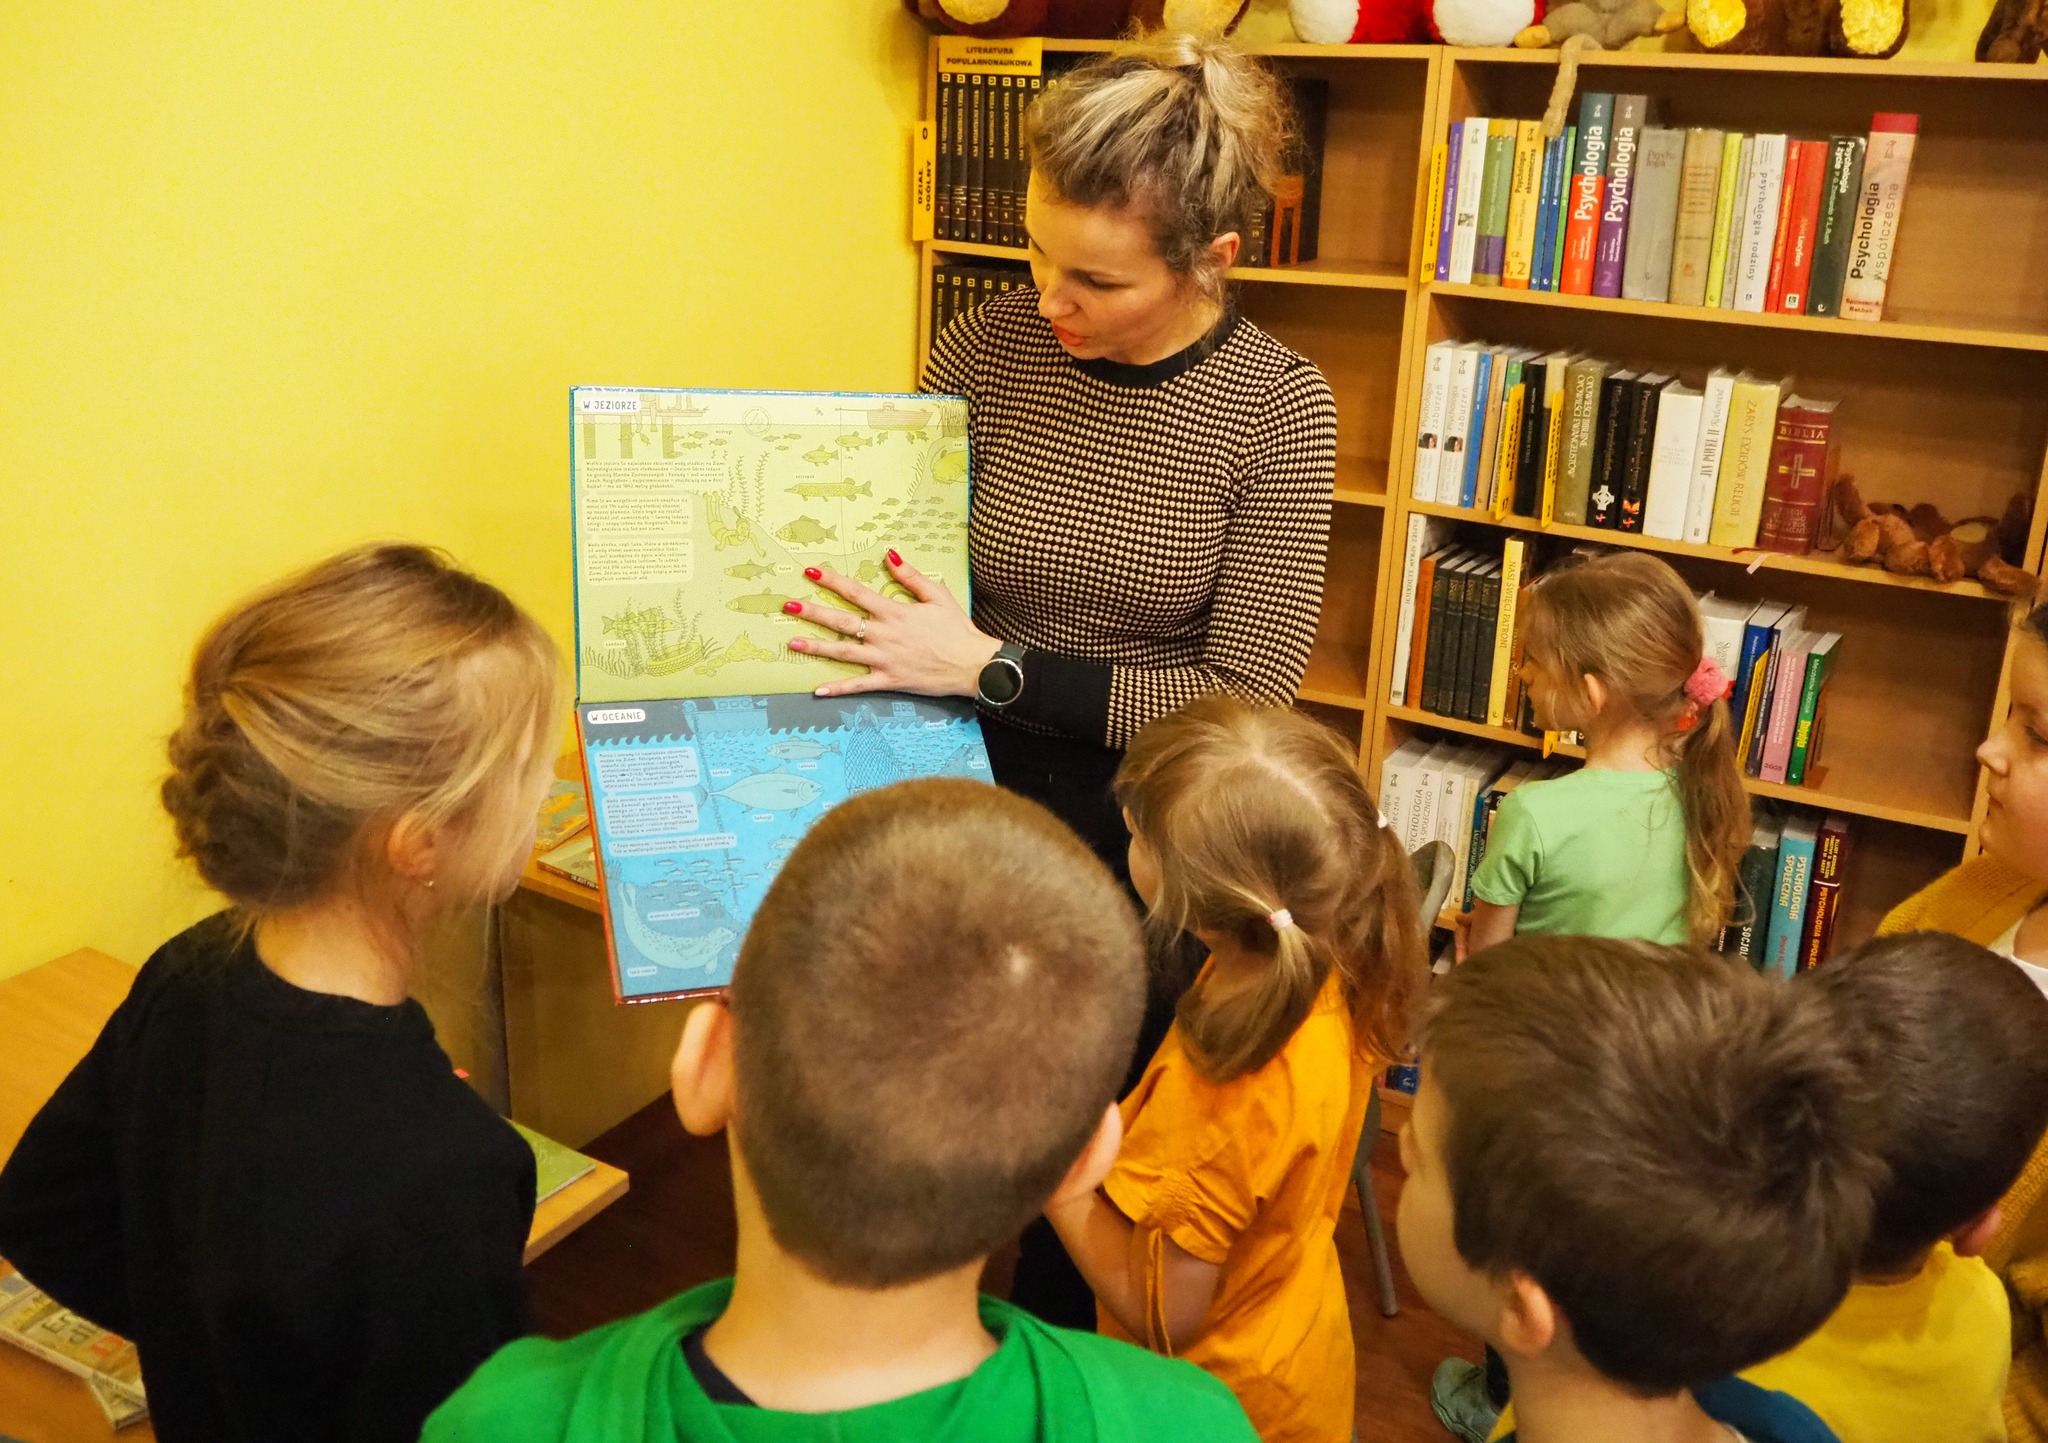 dzieci stoją obok kobiety która pokazuje im książkę